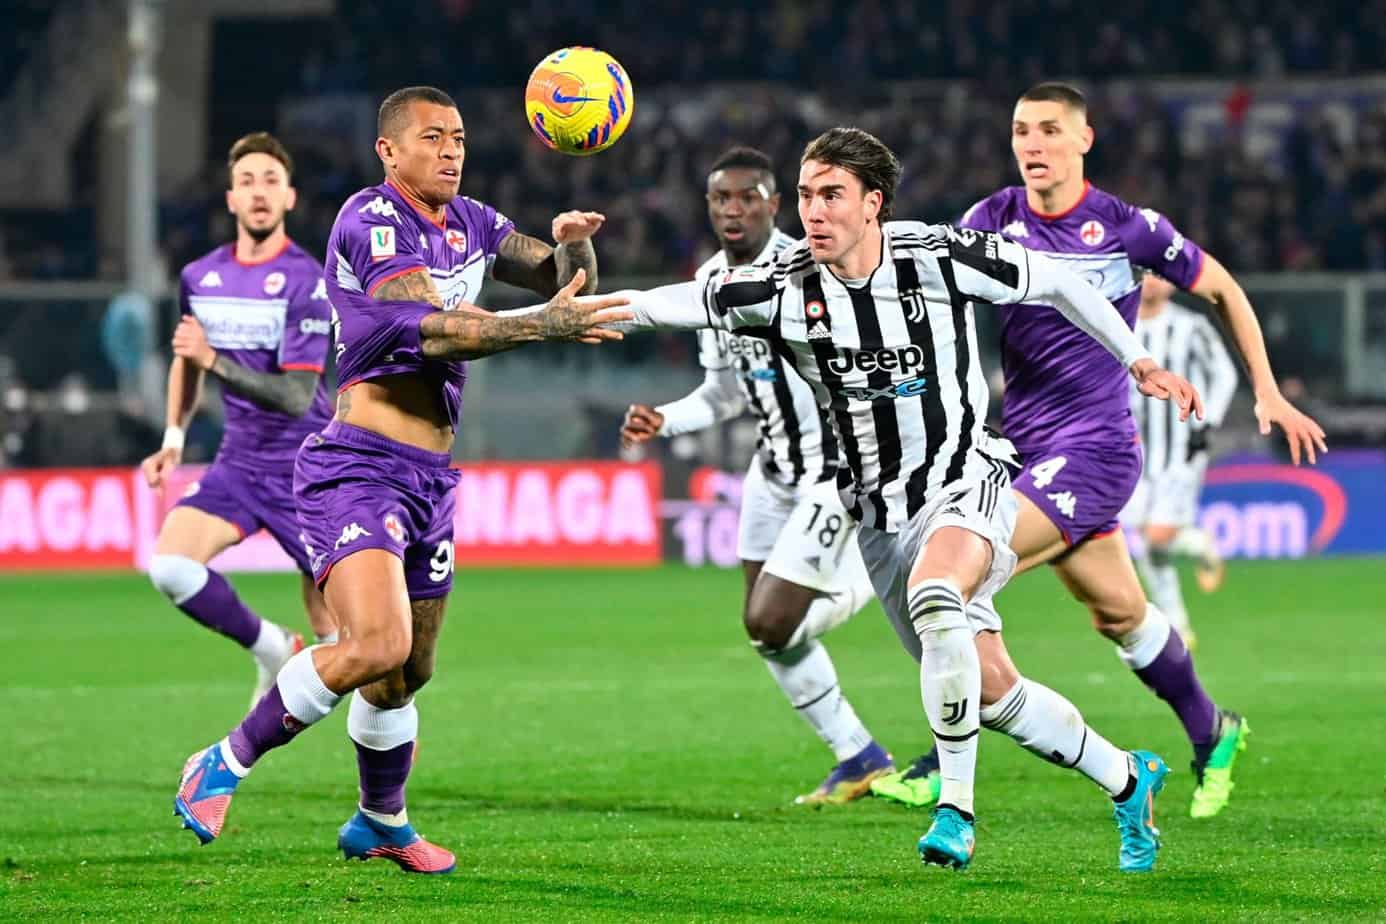 Antevisão e probabilidades de aposta de Fiorentina x Juventus